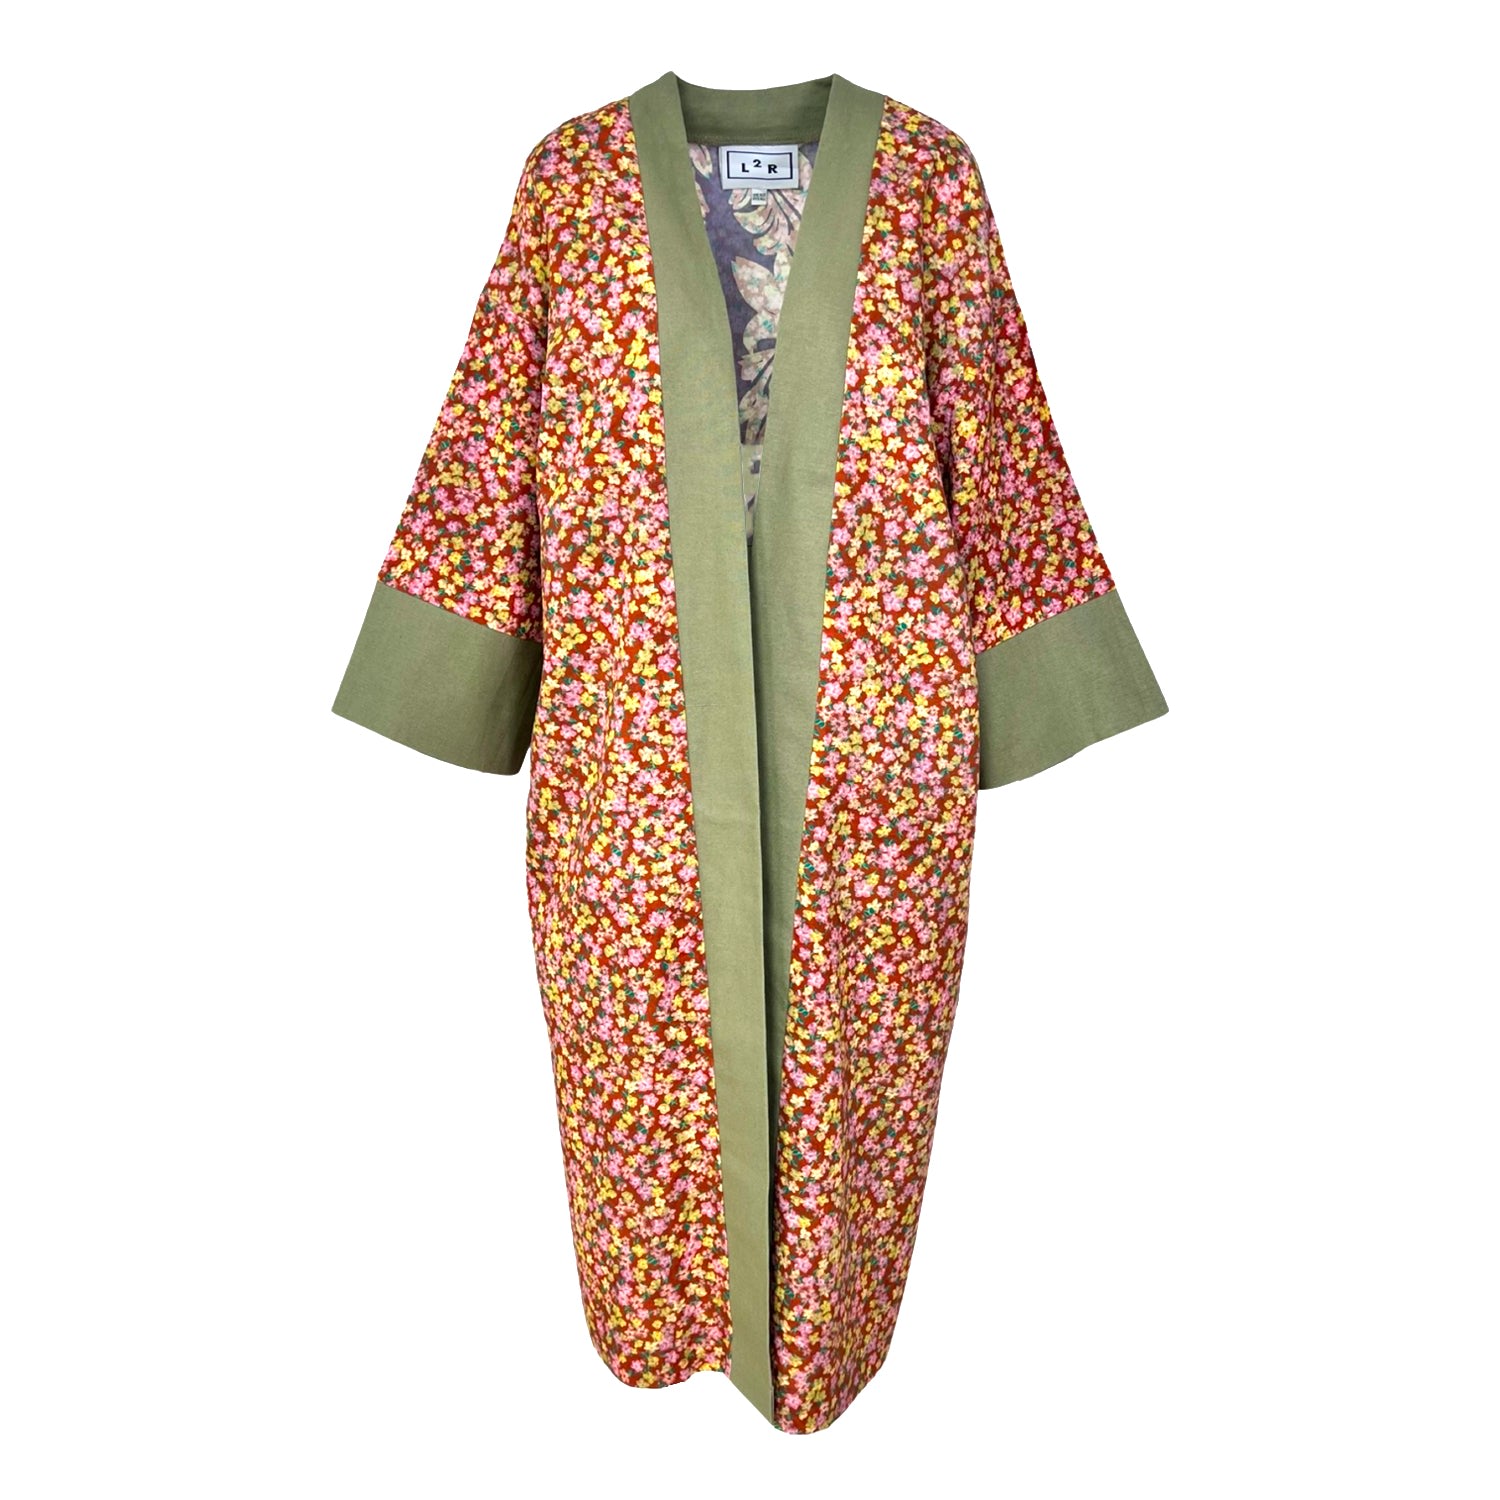 L2r The Label Women's Green / Brown Reversible Kaftan Kimono - Floral Brown & Green Print